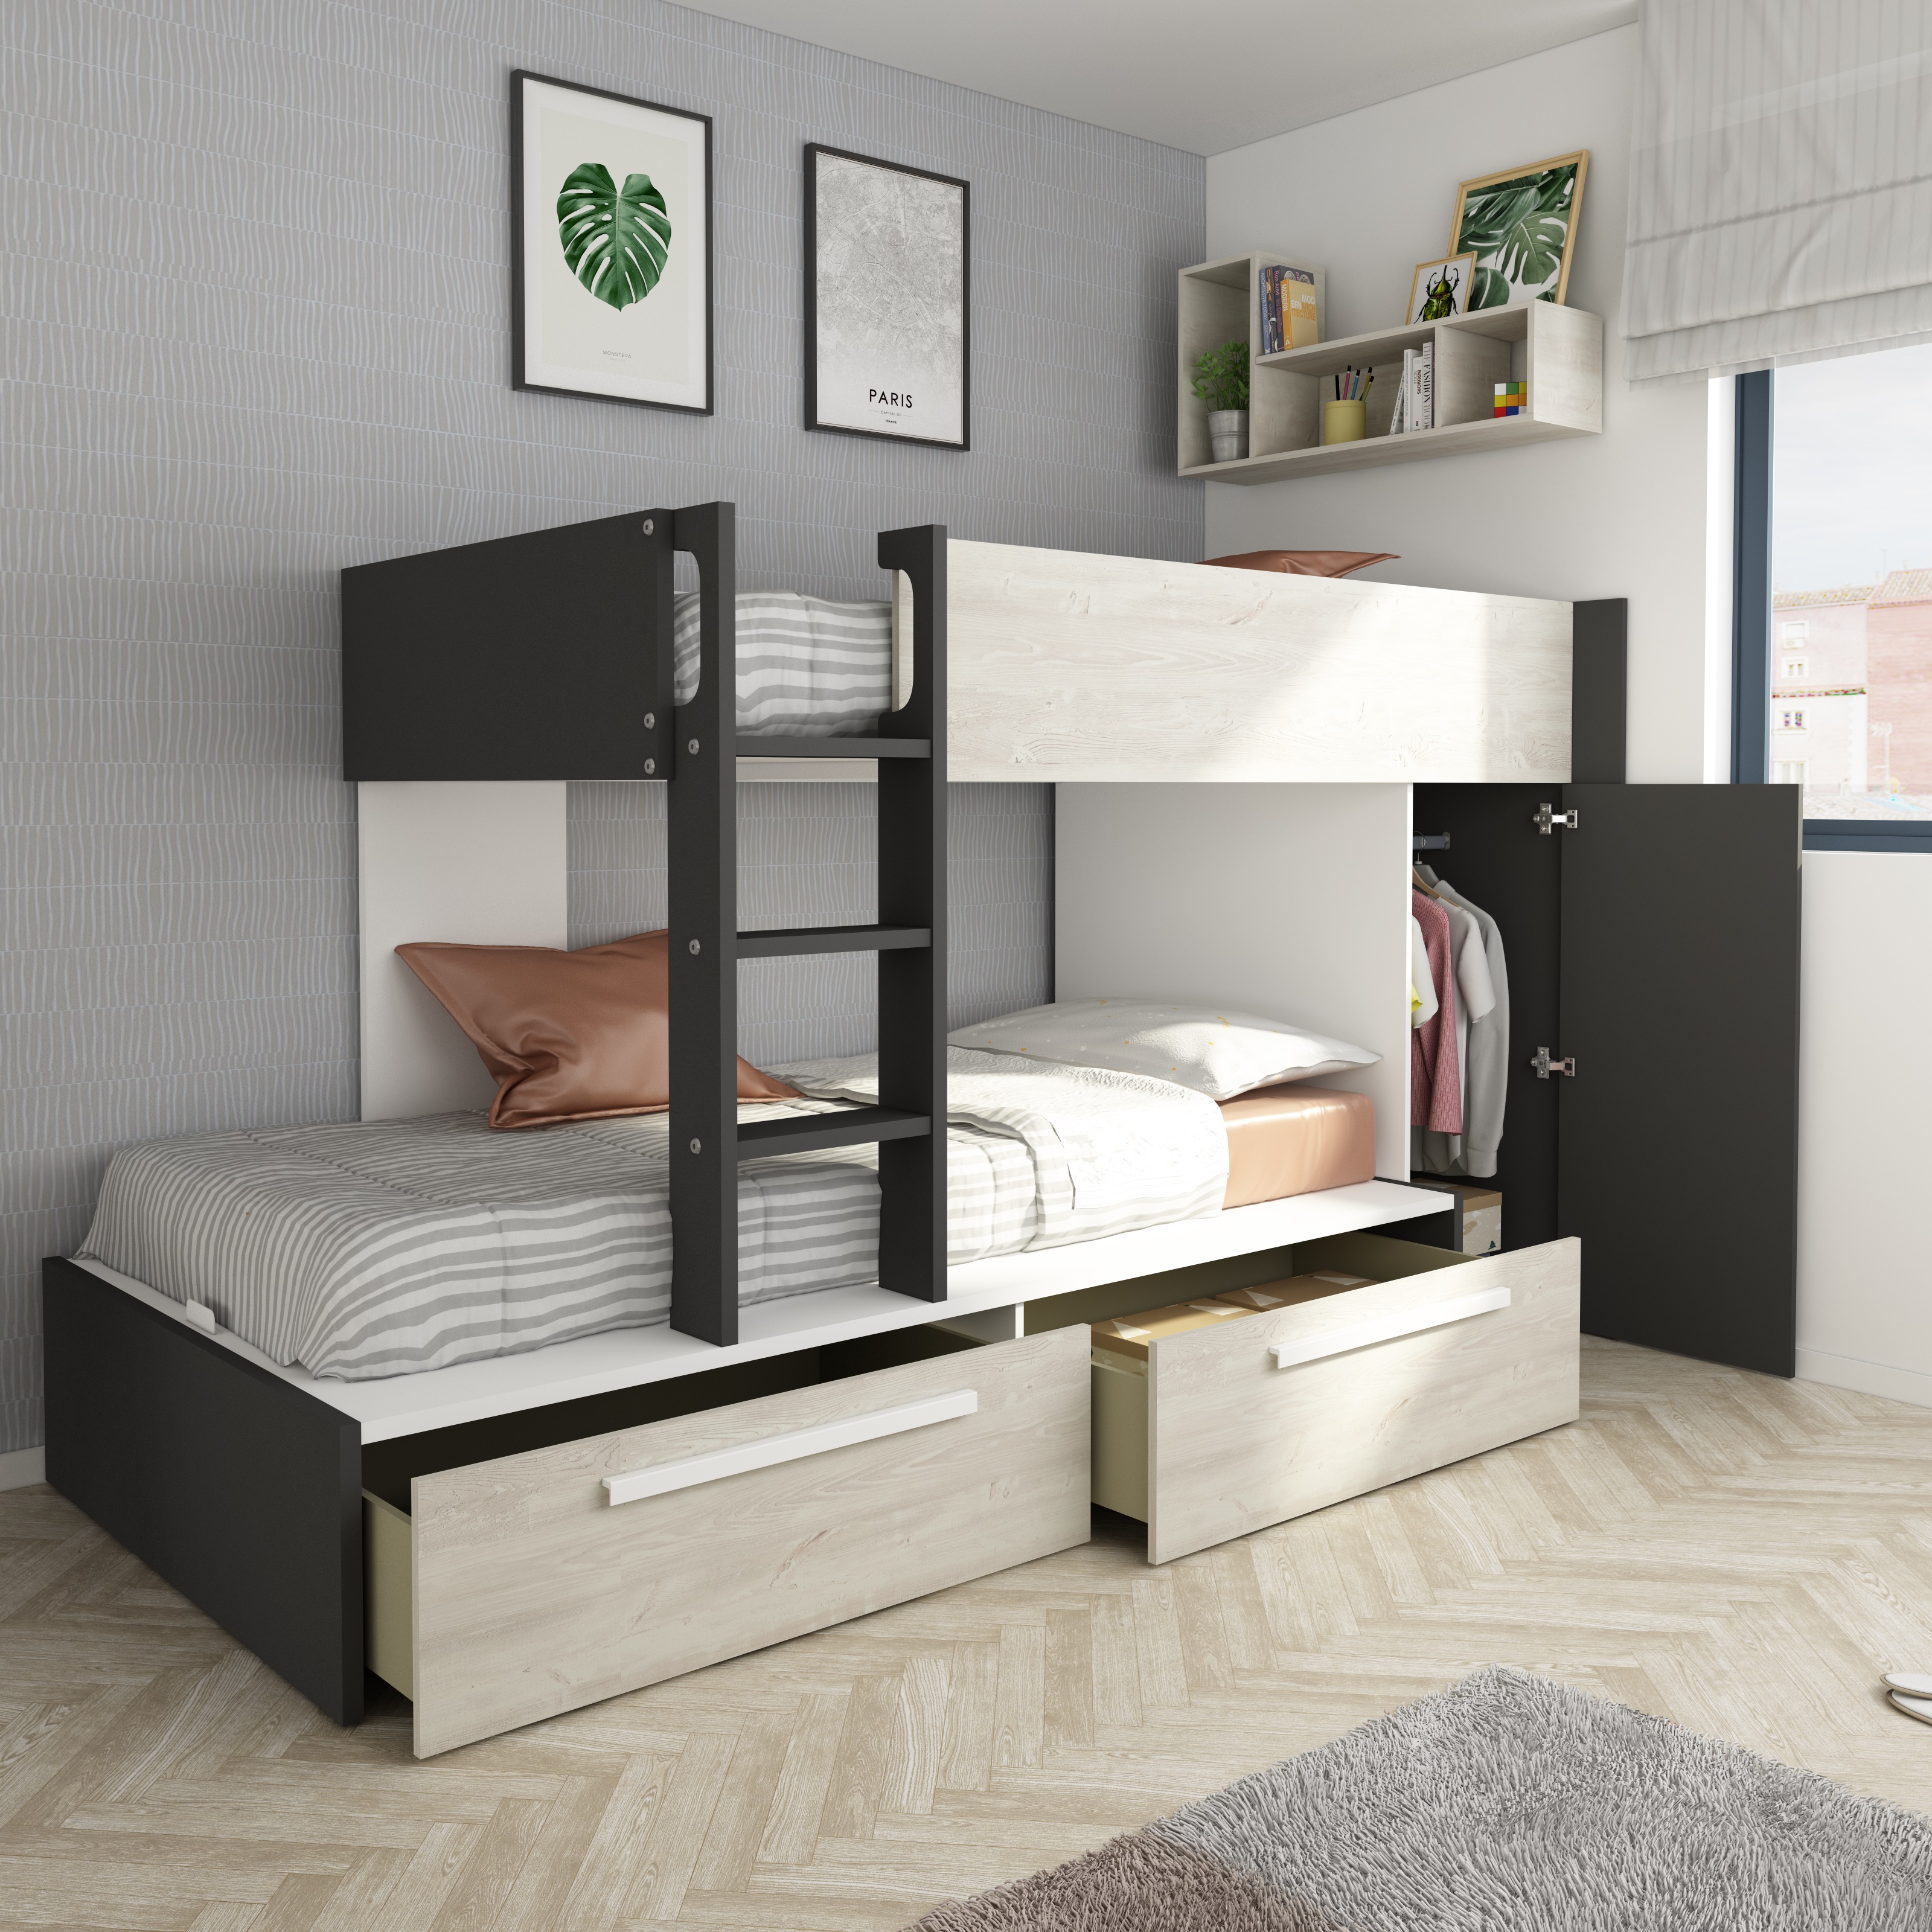 Dormitorios juveniles: 3 armarios para optimizar tu almacenaje